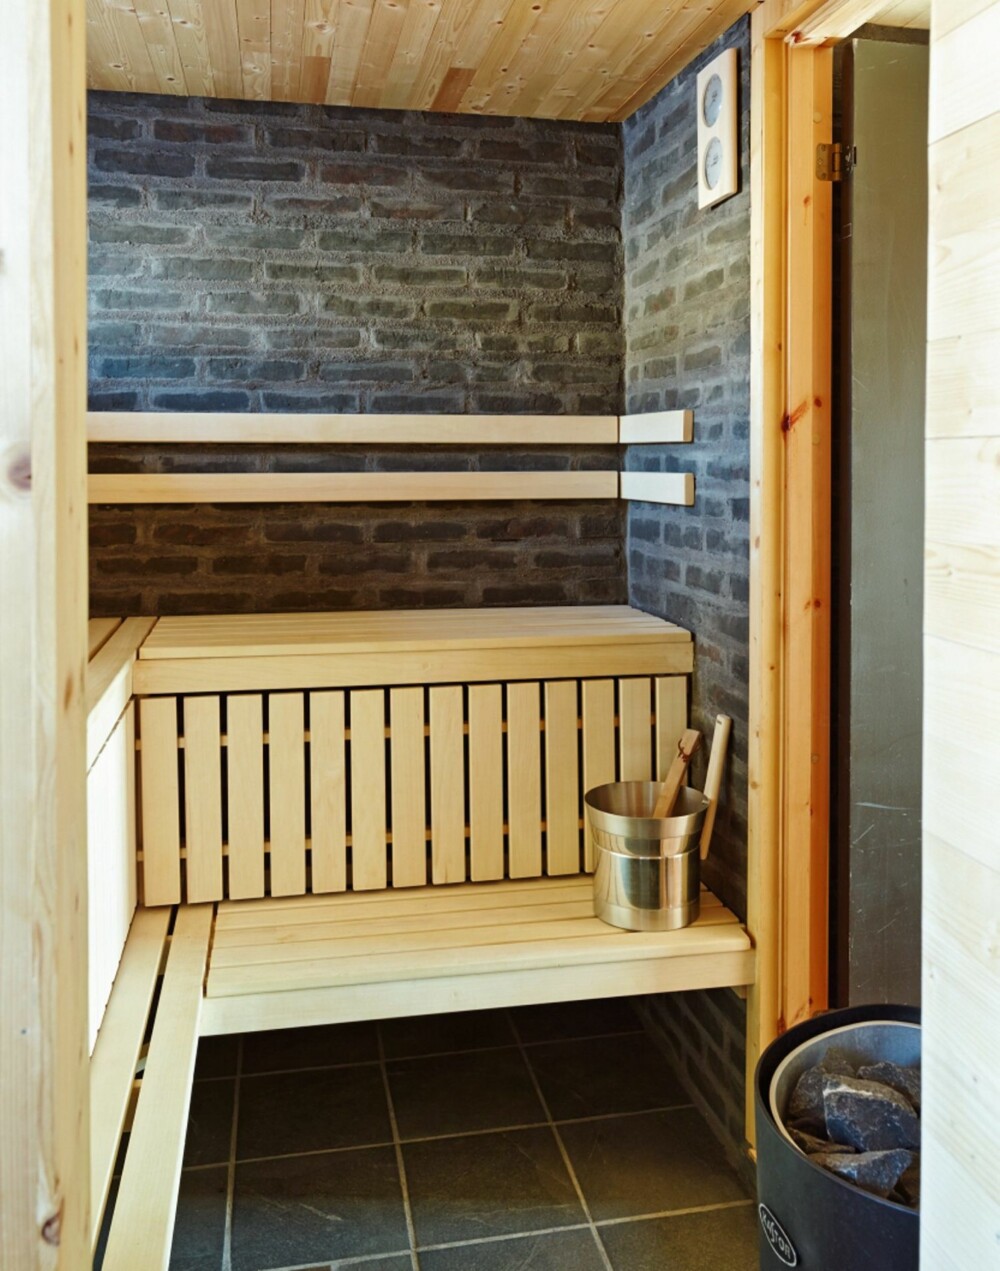 REKREASJON: Den svarte teglsteinen står i fin kontrast til den lyse kledningen. Her fra hyttas badstue.